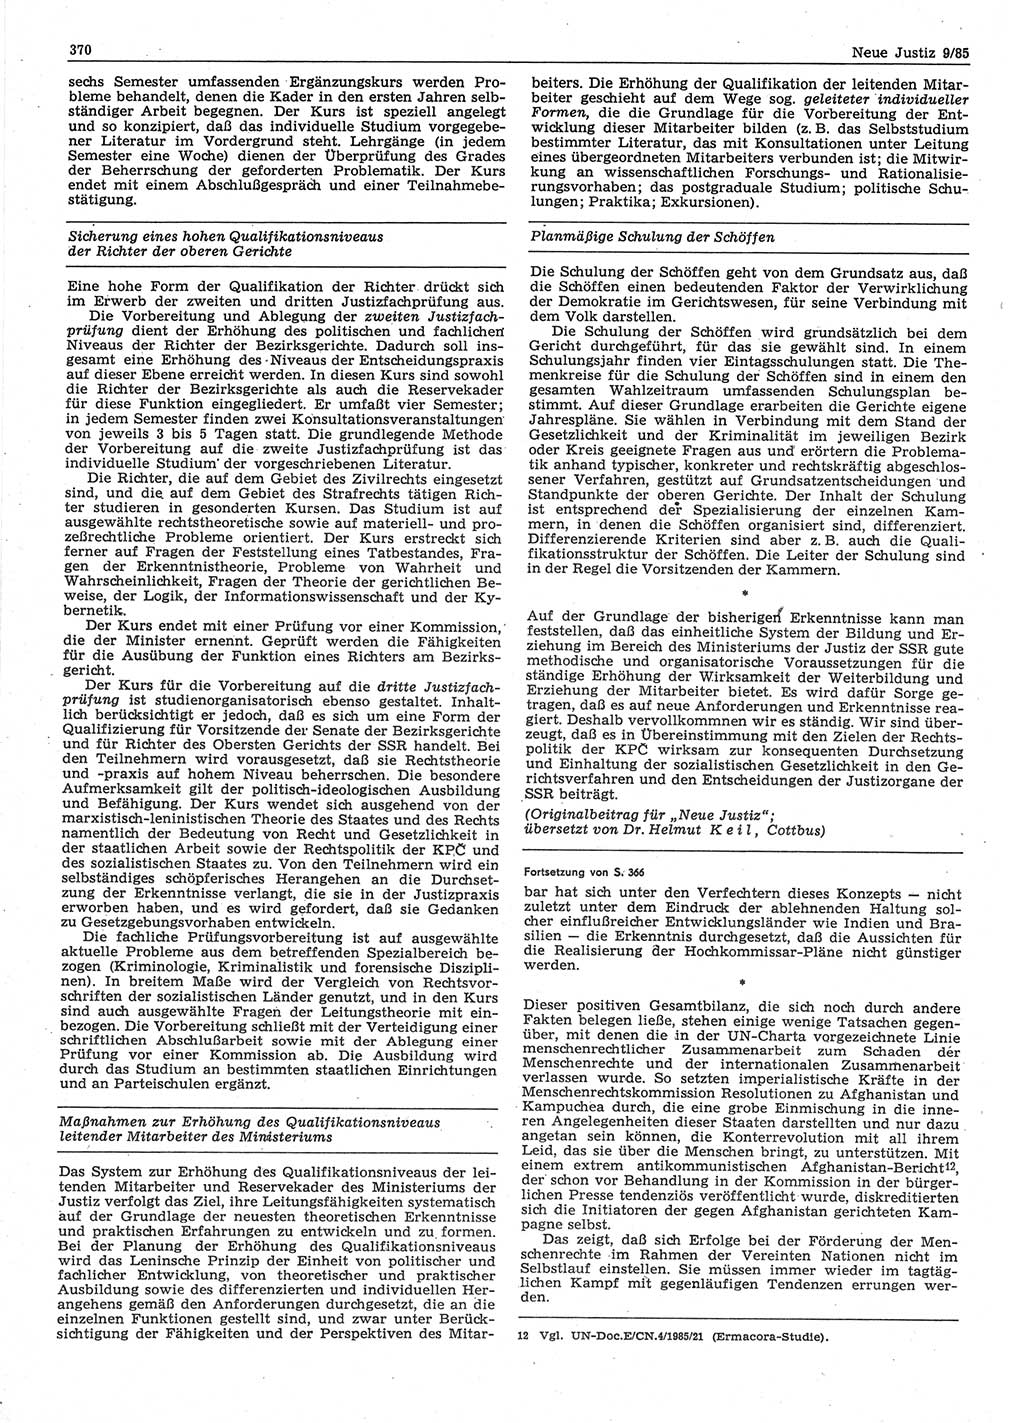 Neue Justiz (NJ), Zeitschrift für sozialistisches Recht und Gesetzlichkeit [Deutsche Demokratische Republik (DDR)], 39. Jahrgang 1985, Seite 370 (NJ DDR 1985, S. 370)